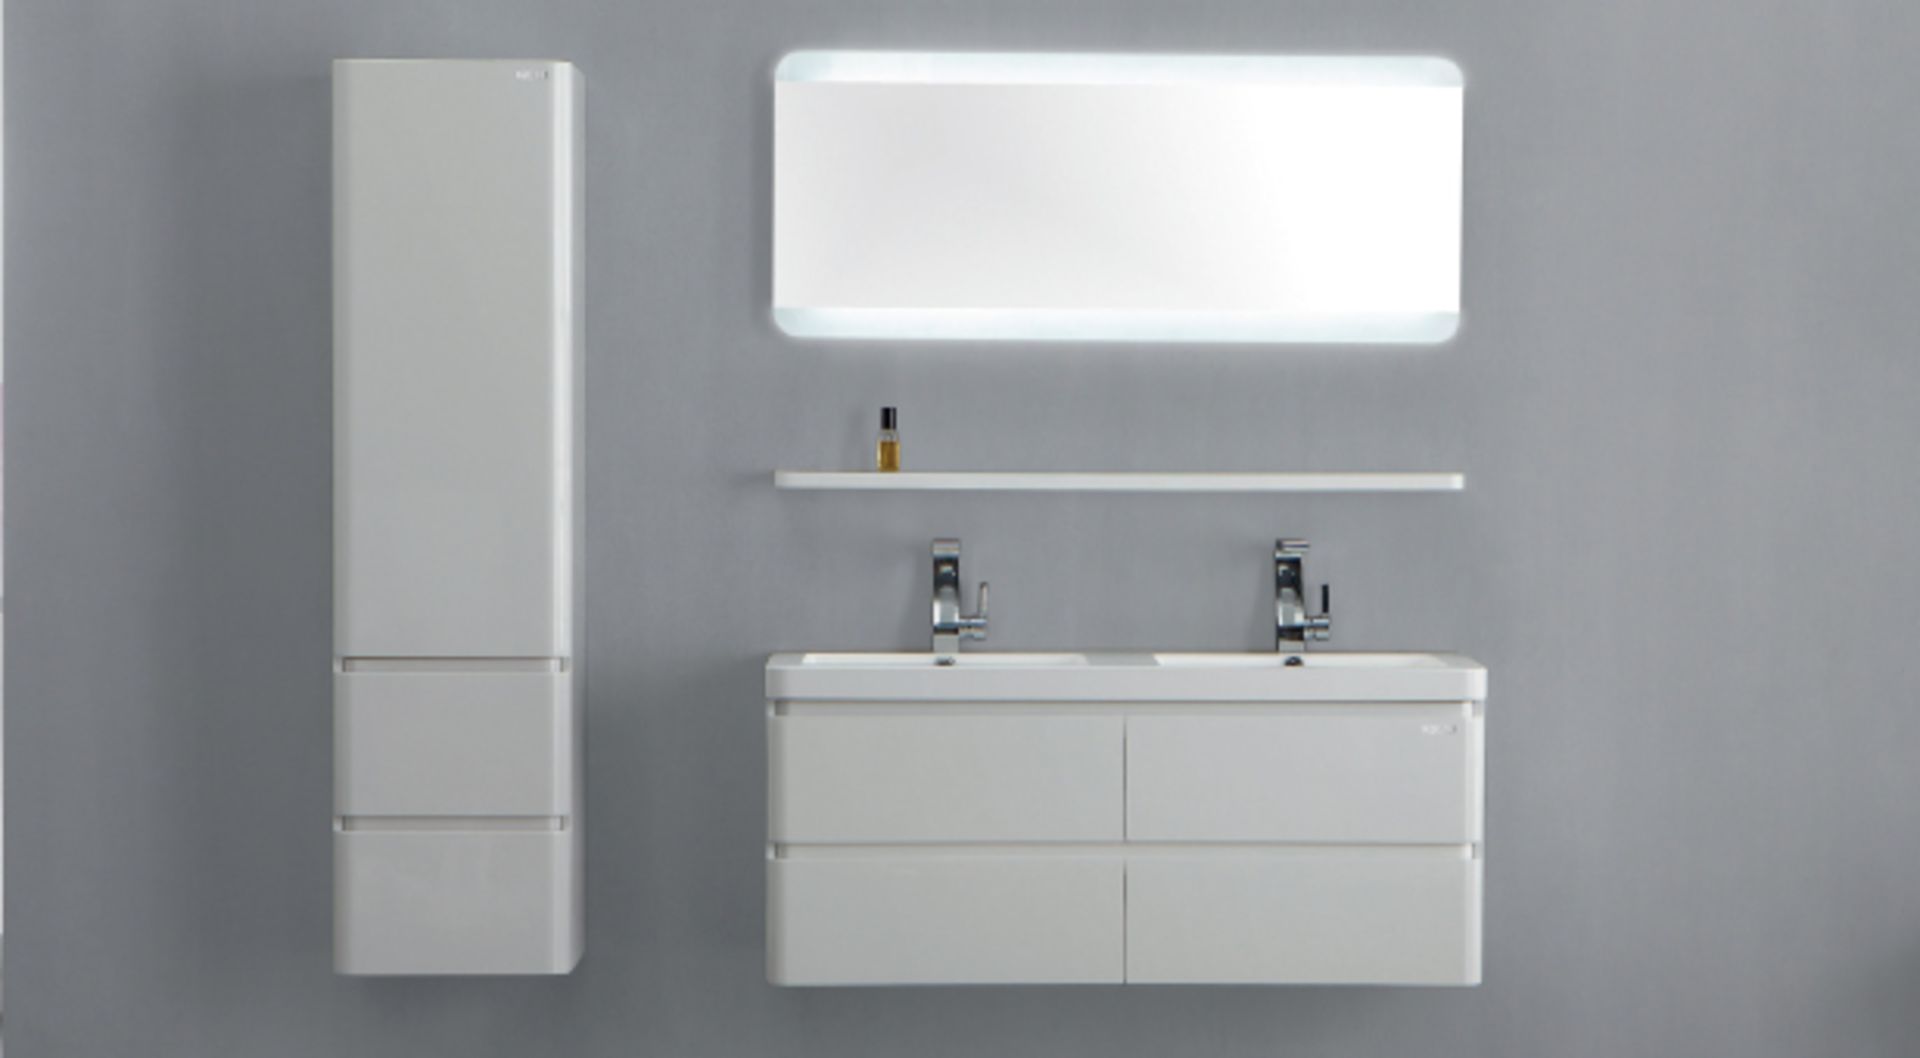 1 x Stylish Bathroom Edge Back-lit Mirror 60 - A-Grade - Ref:AMR11-060 - CL170 - Location: